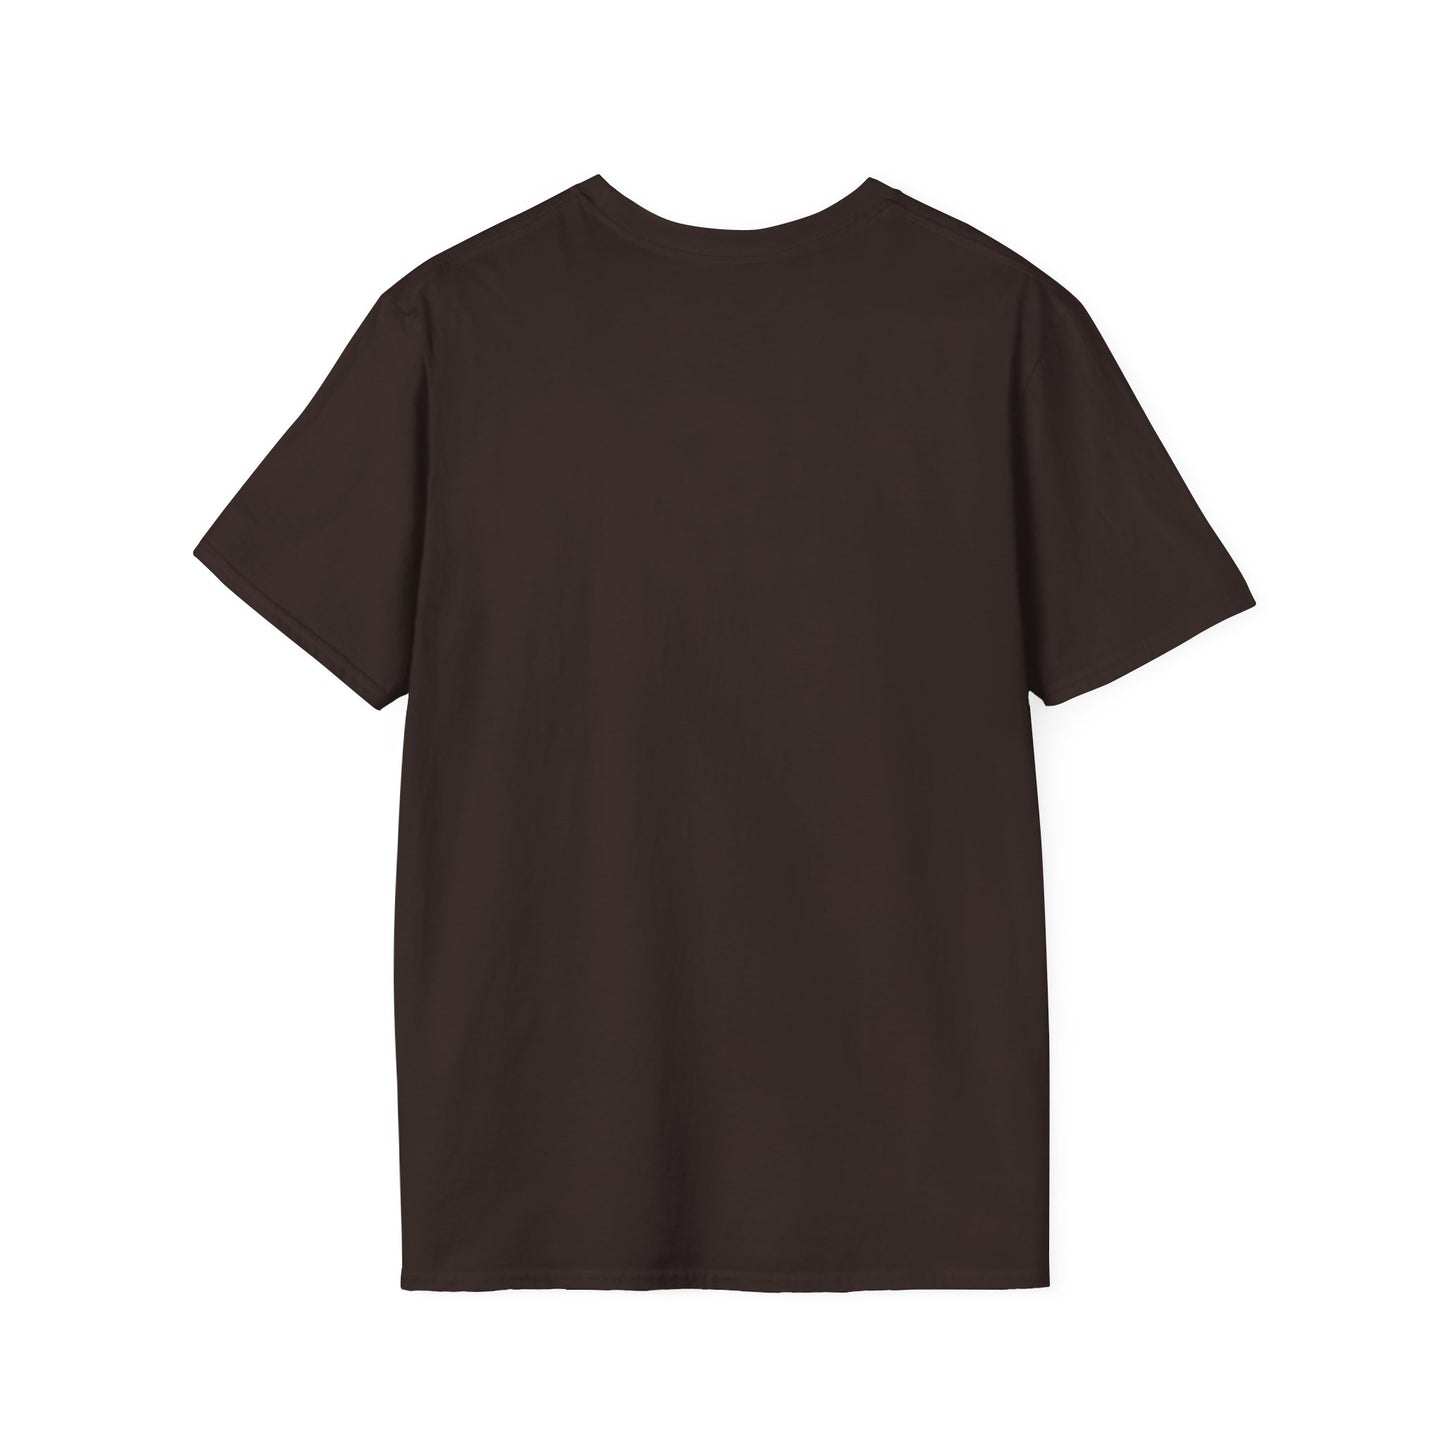 RAM-2 Unisex Softstyle T-Shirt